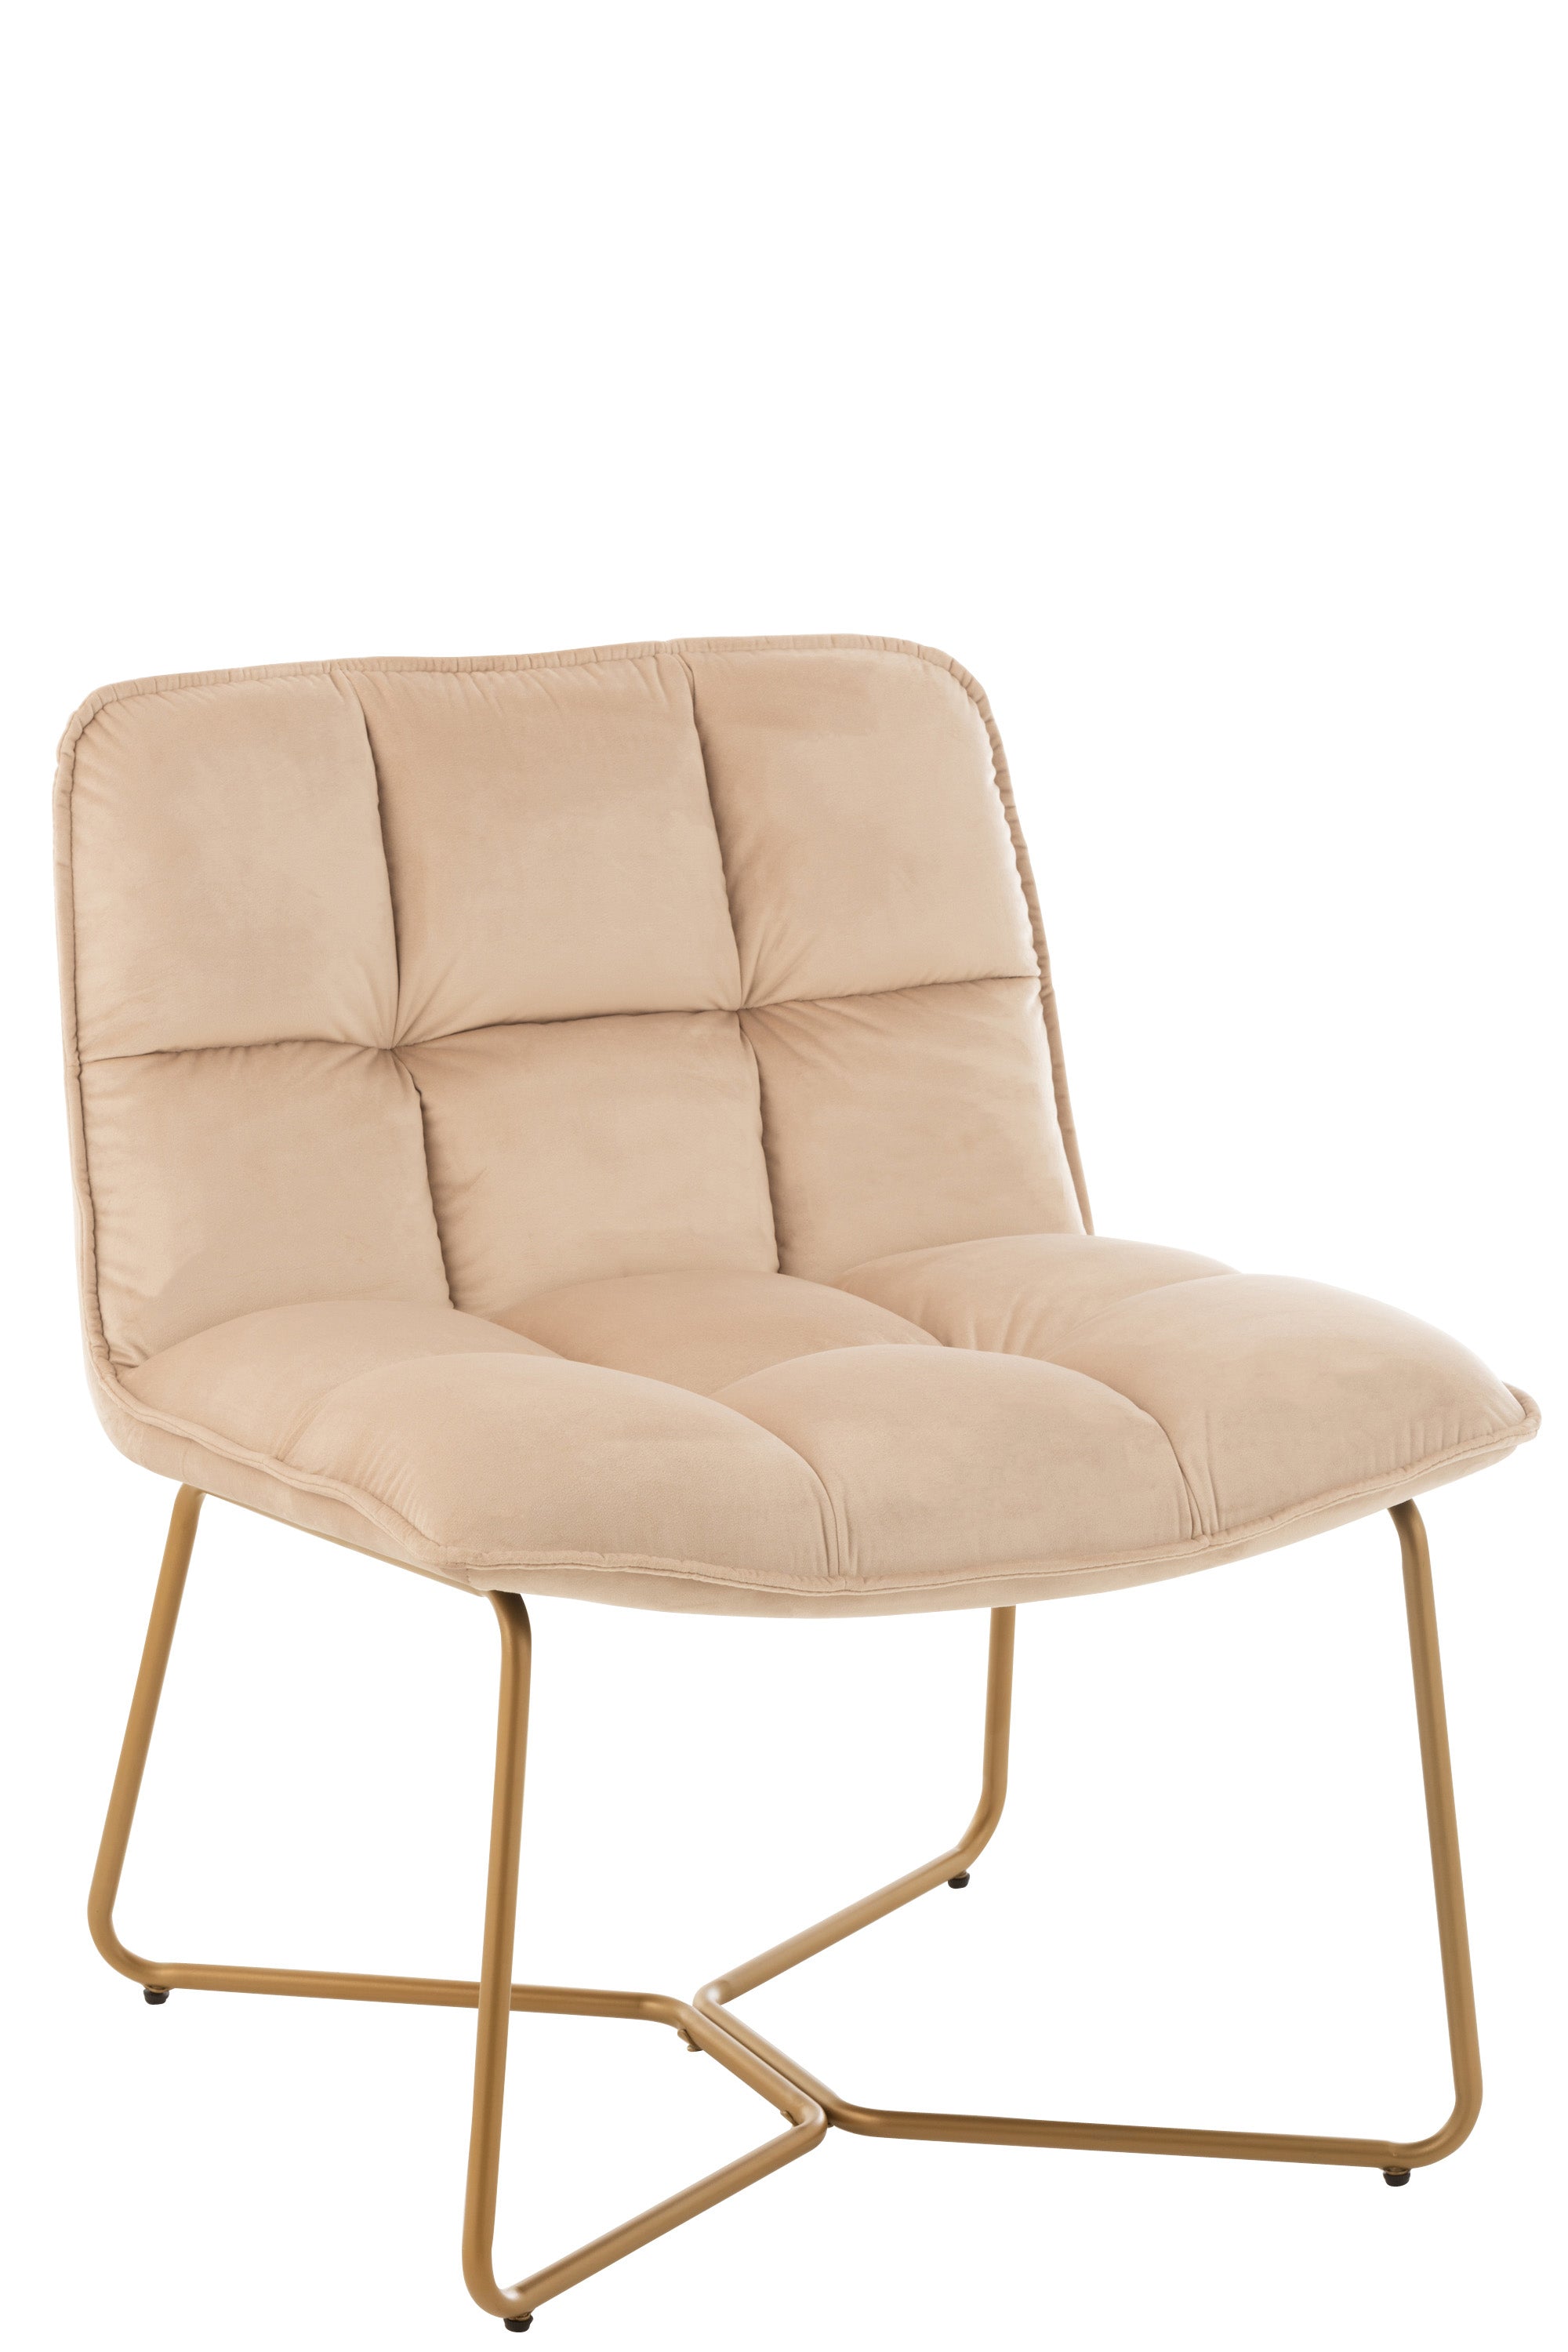 Lounge Stuhl, dick gepolstert, bezogen mit beiger Mikrofaser in Vierecken gesteppt; lehne halbhoch; vier Beine aus goldfarbenem Metall, kufenartig nach innen gearbeitet.